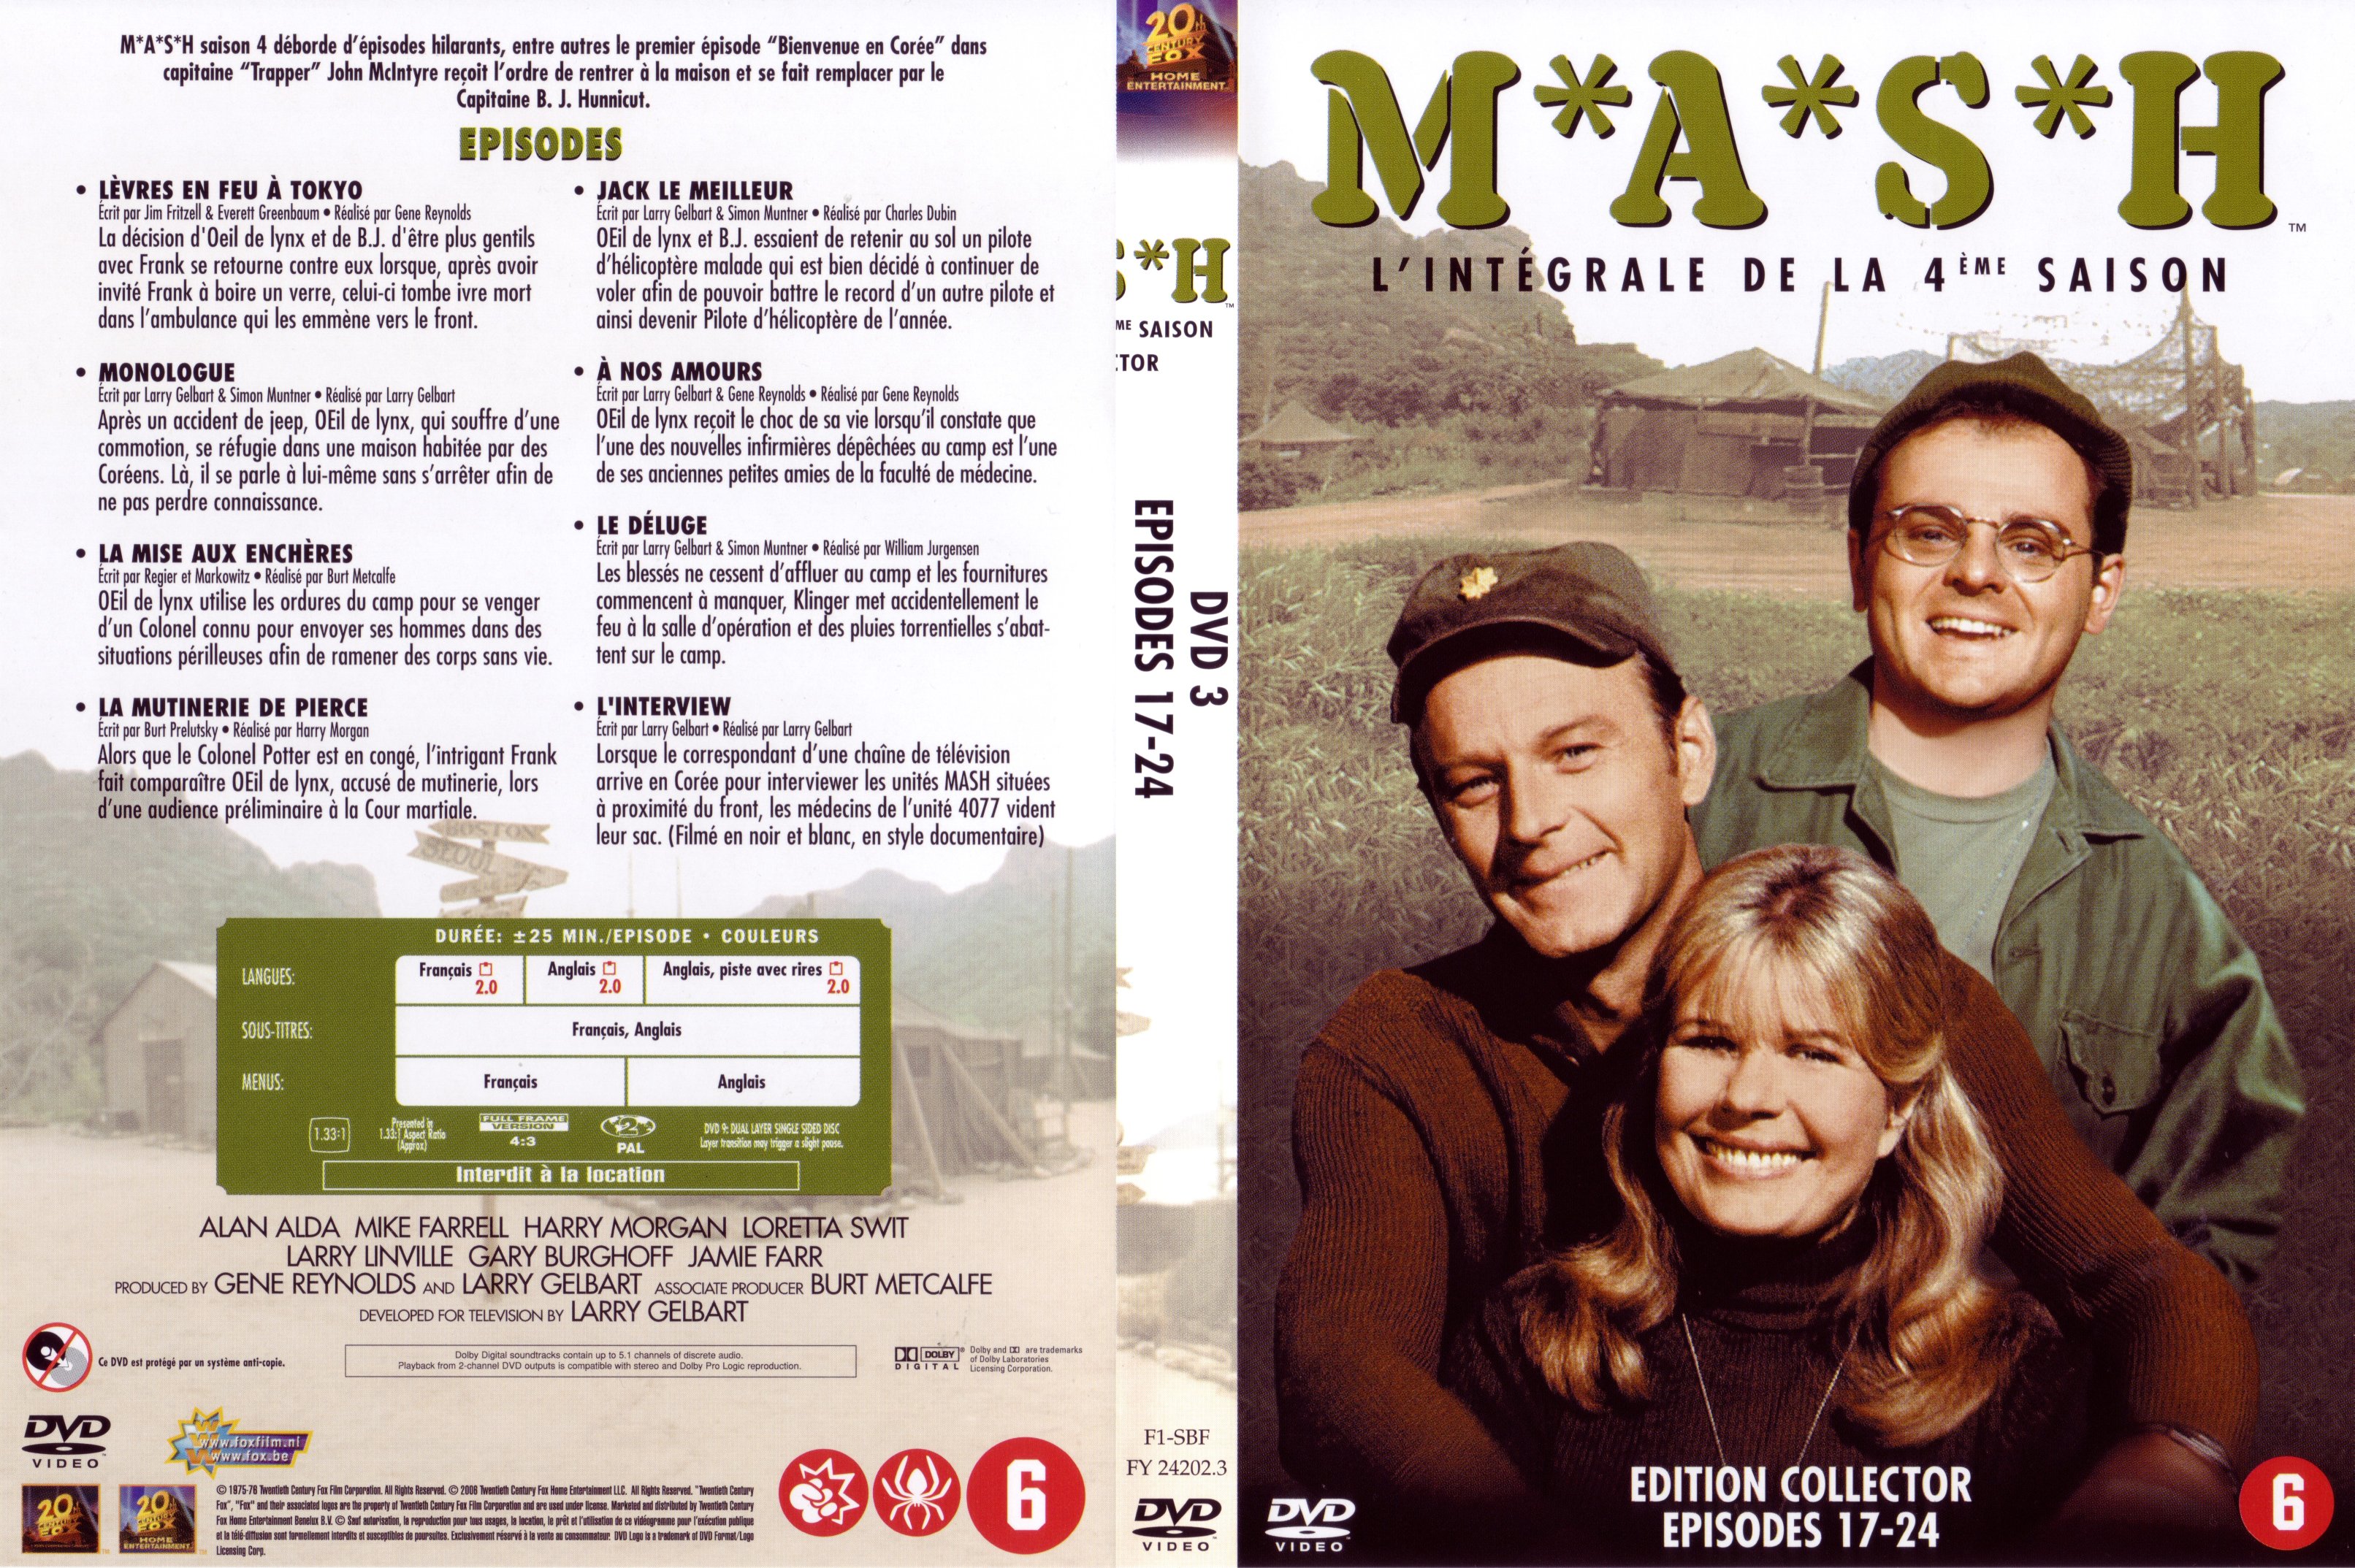 Jaquette DVD MASH Saison 4 vol 3